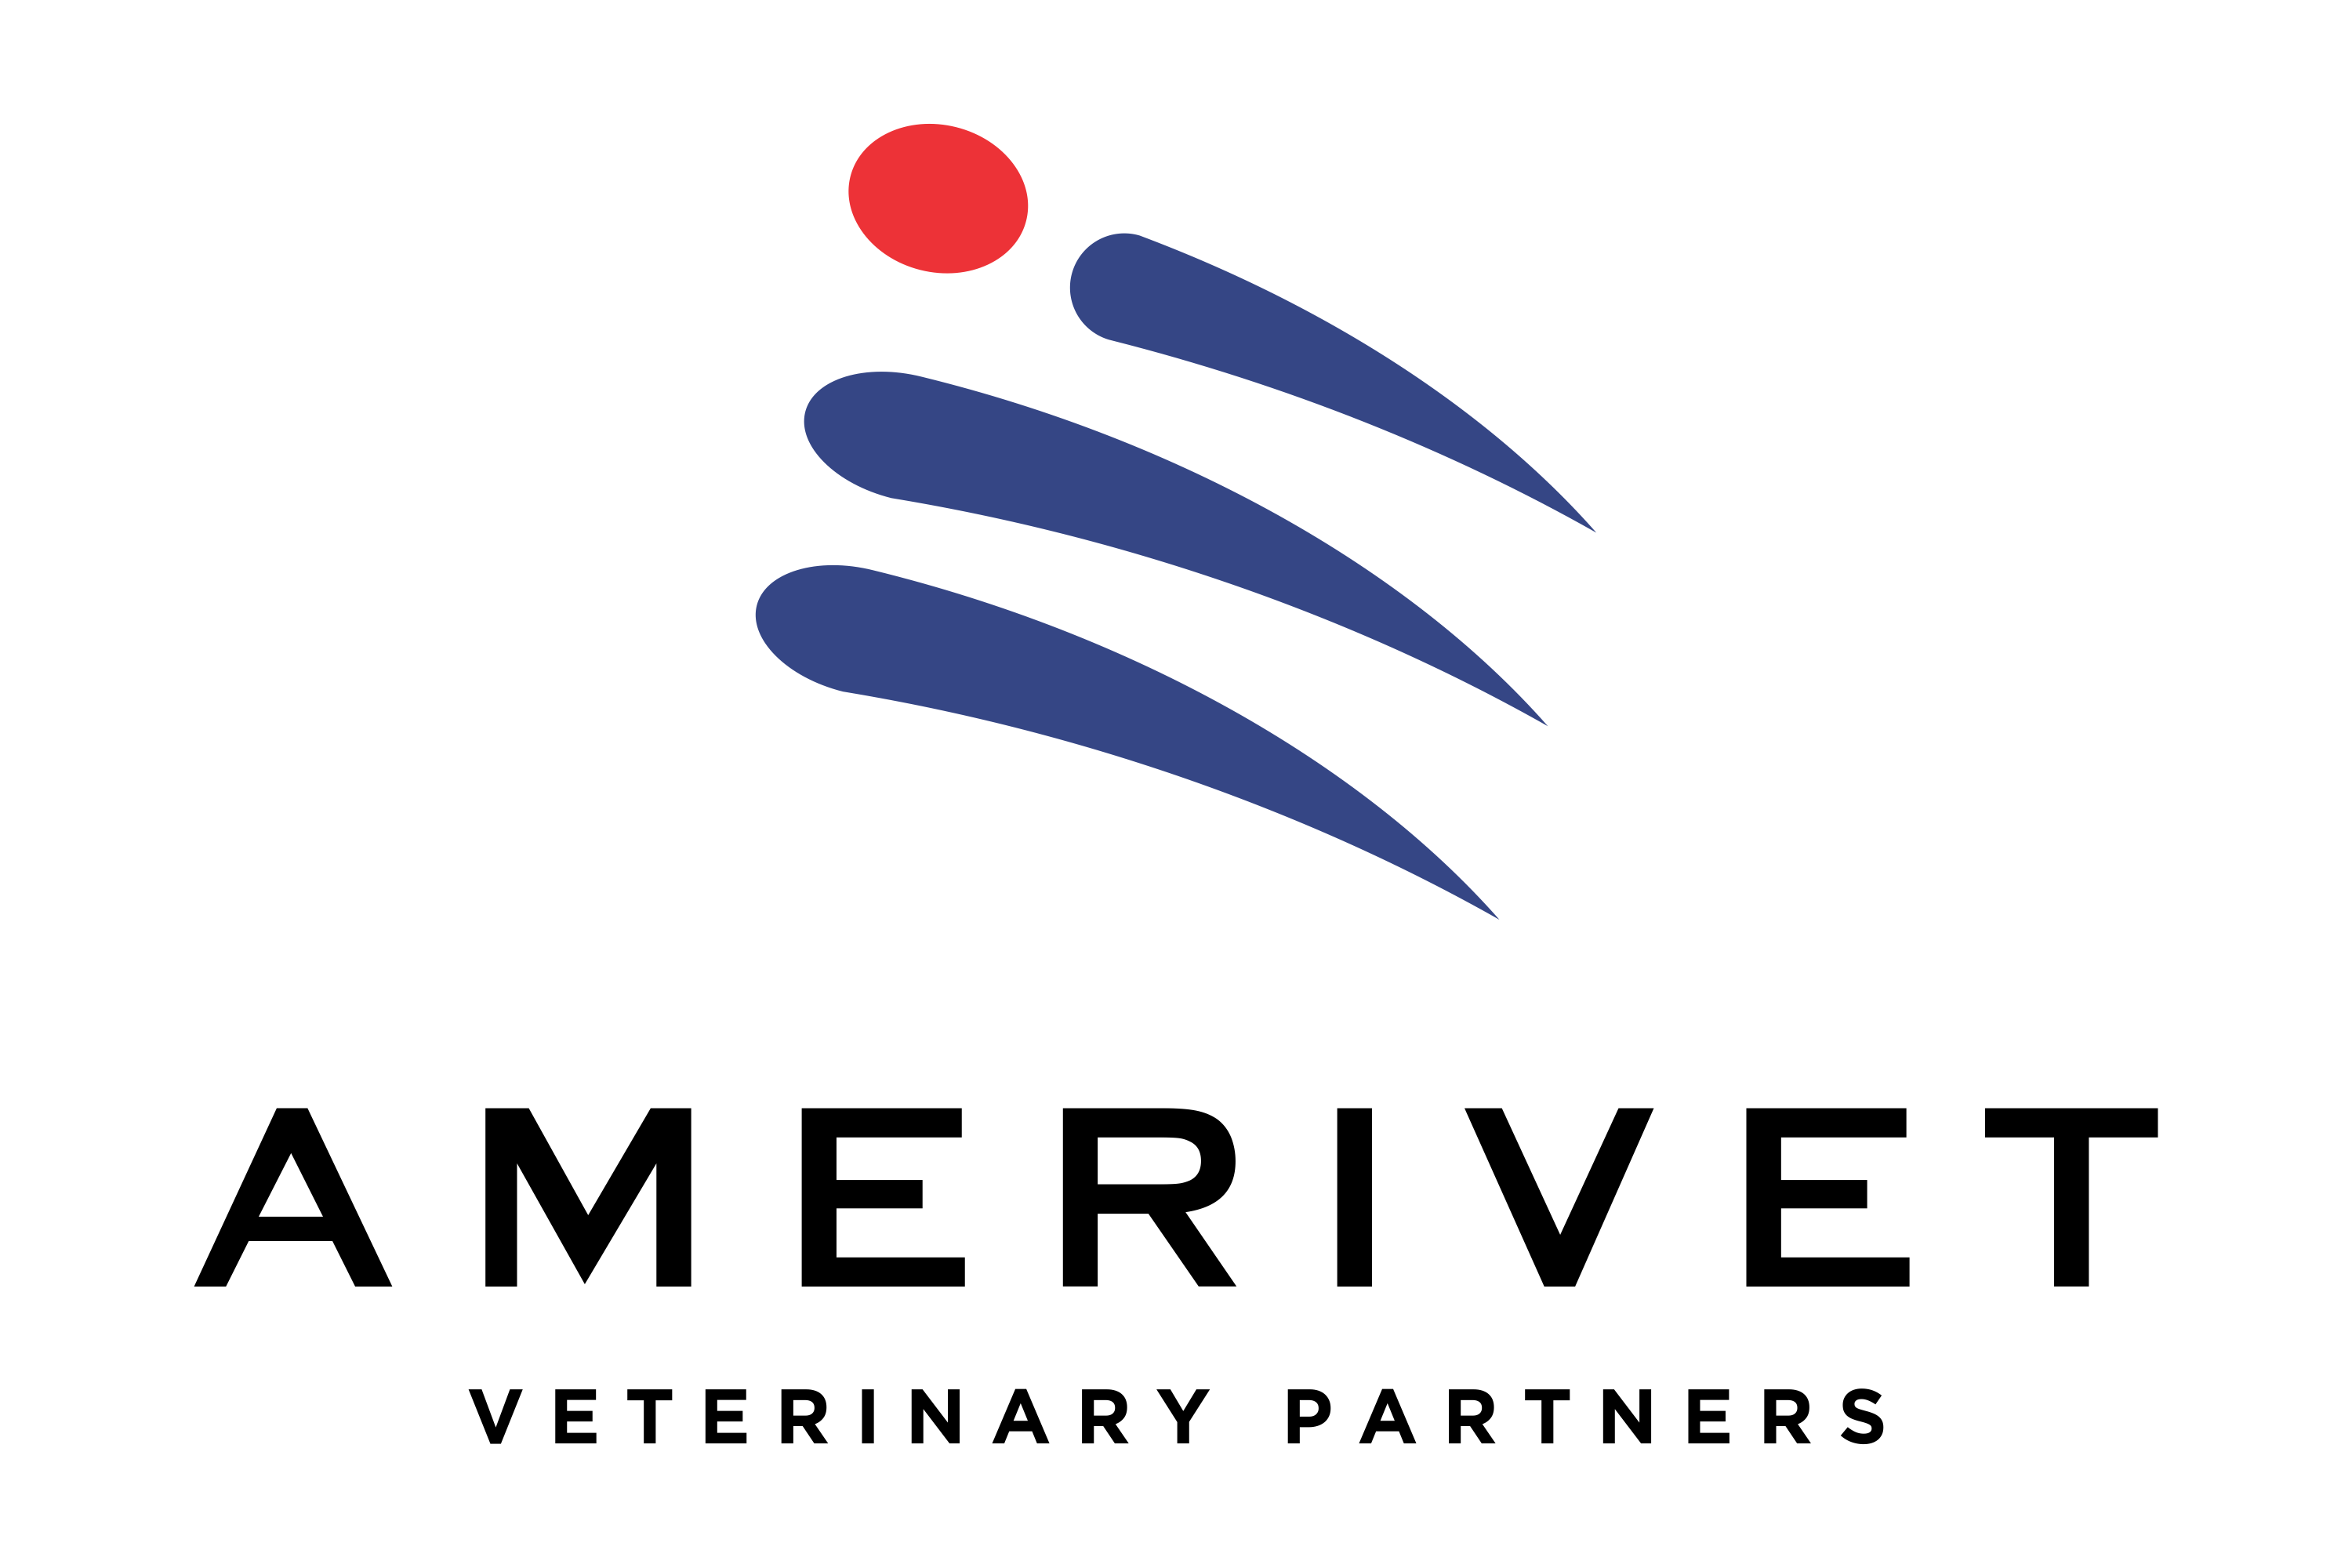 AmeriVet Veterinary Partners Company Logo